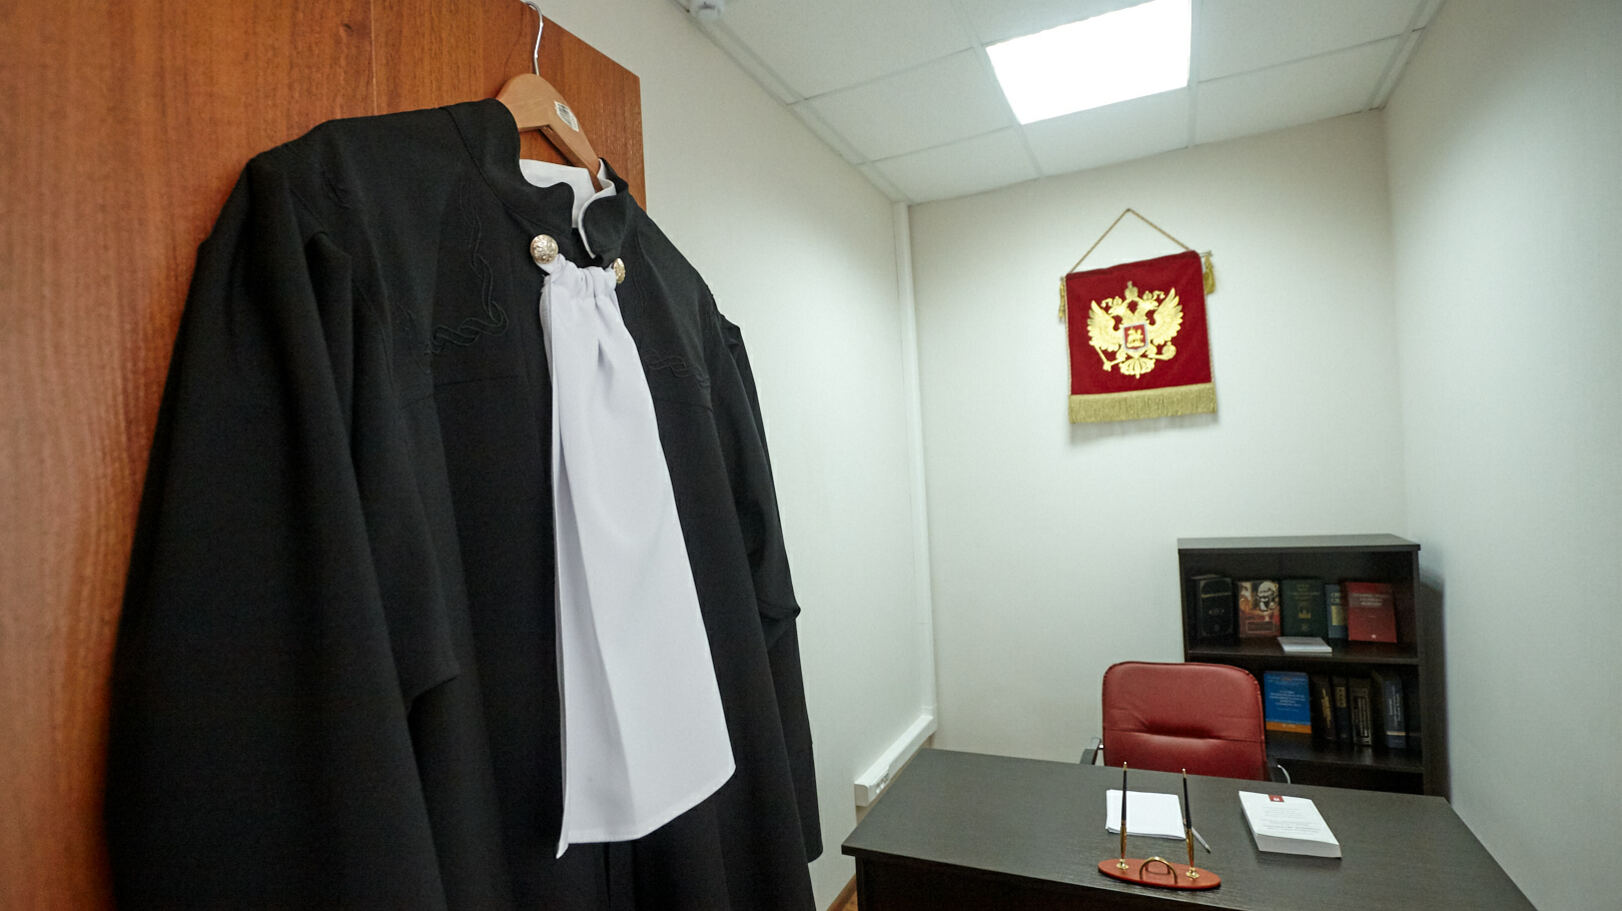 Судью в Ростовской области лишили статуса за прогулы